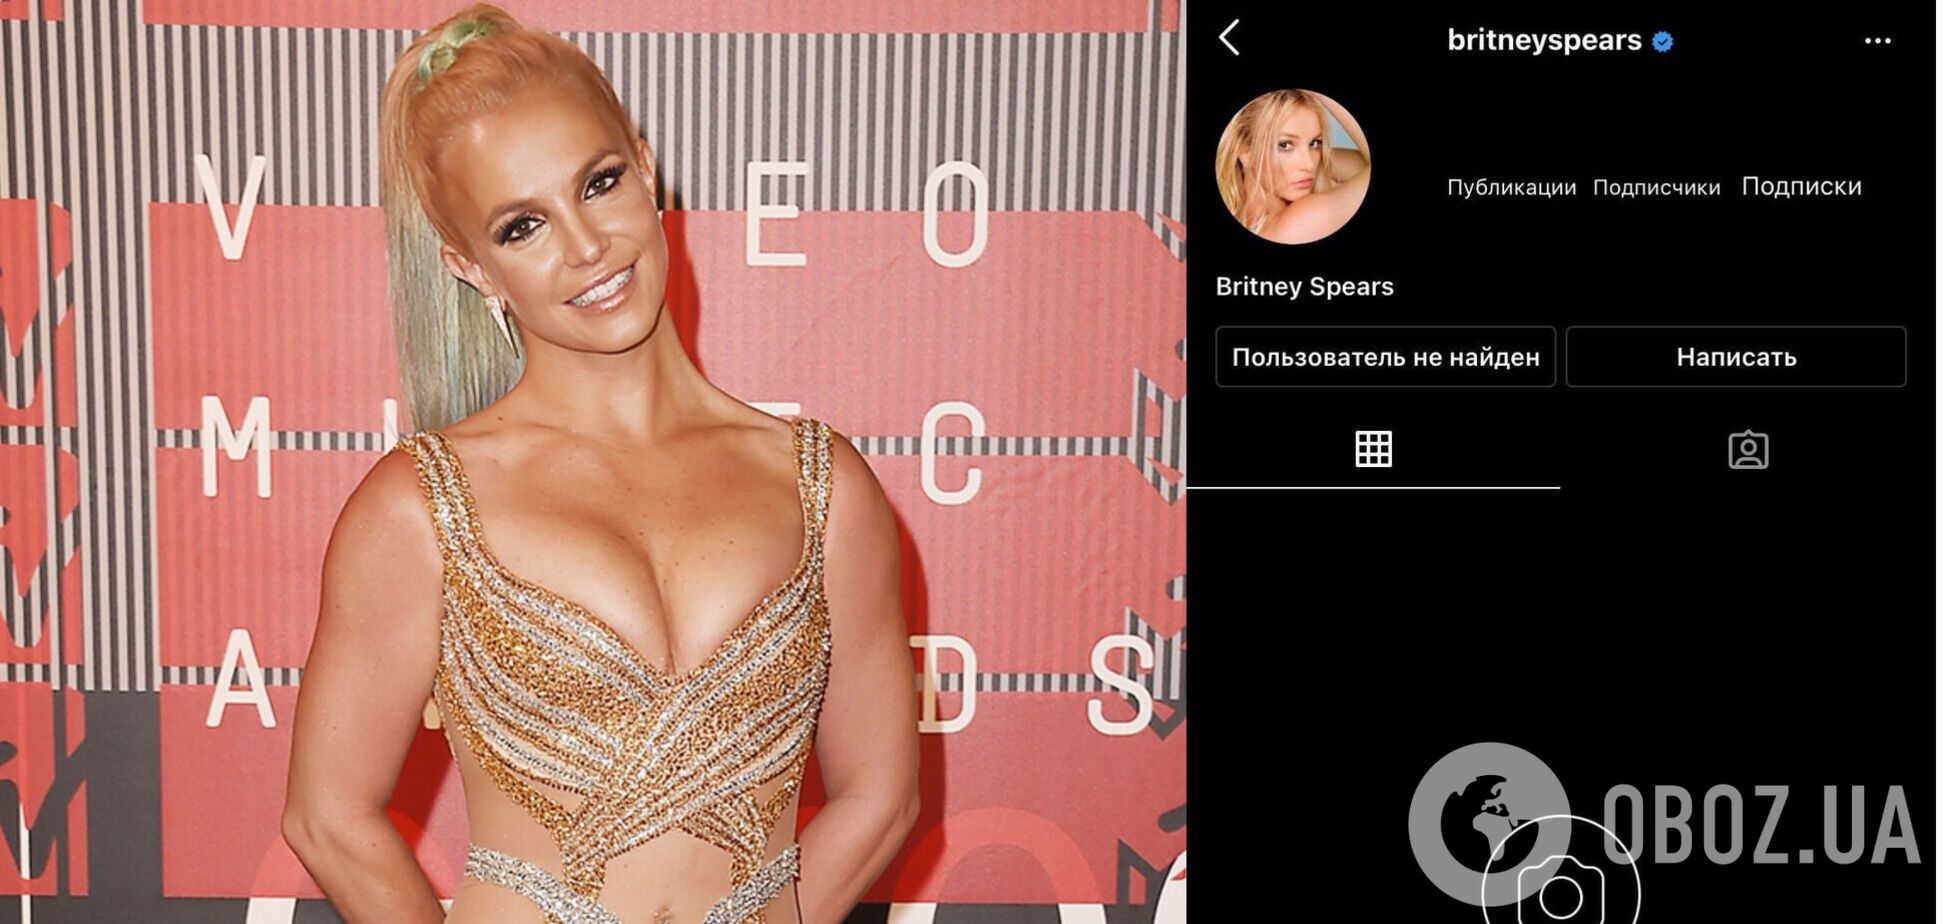 Бритни Спирс после помолвки внезапно удалила страницу в Instagram